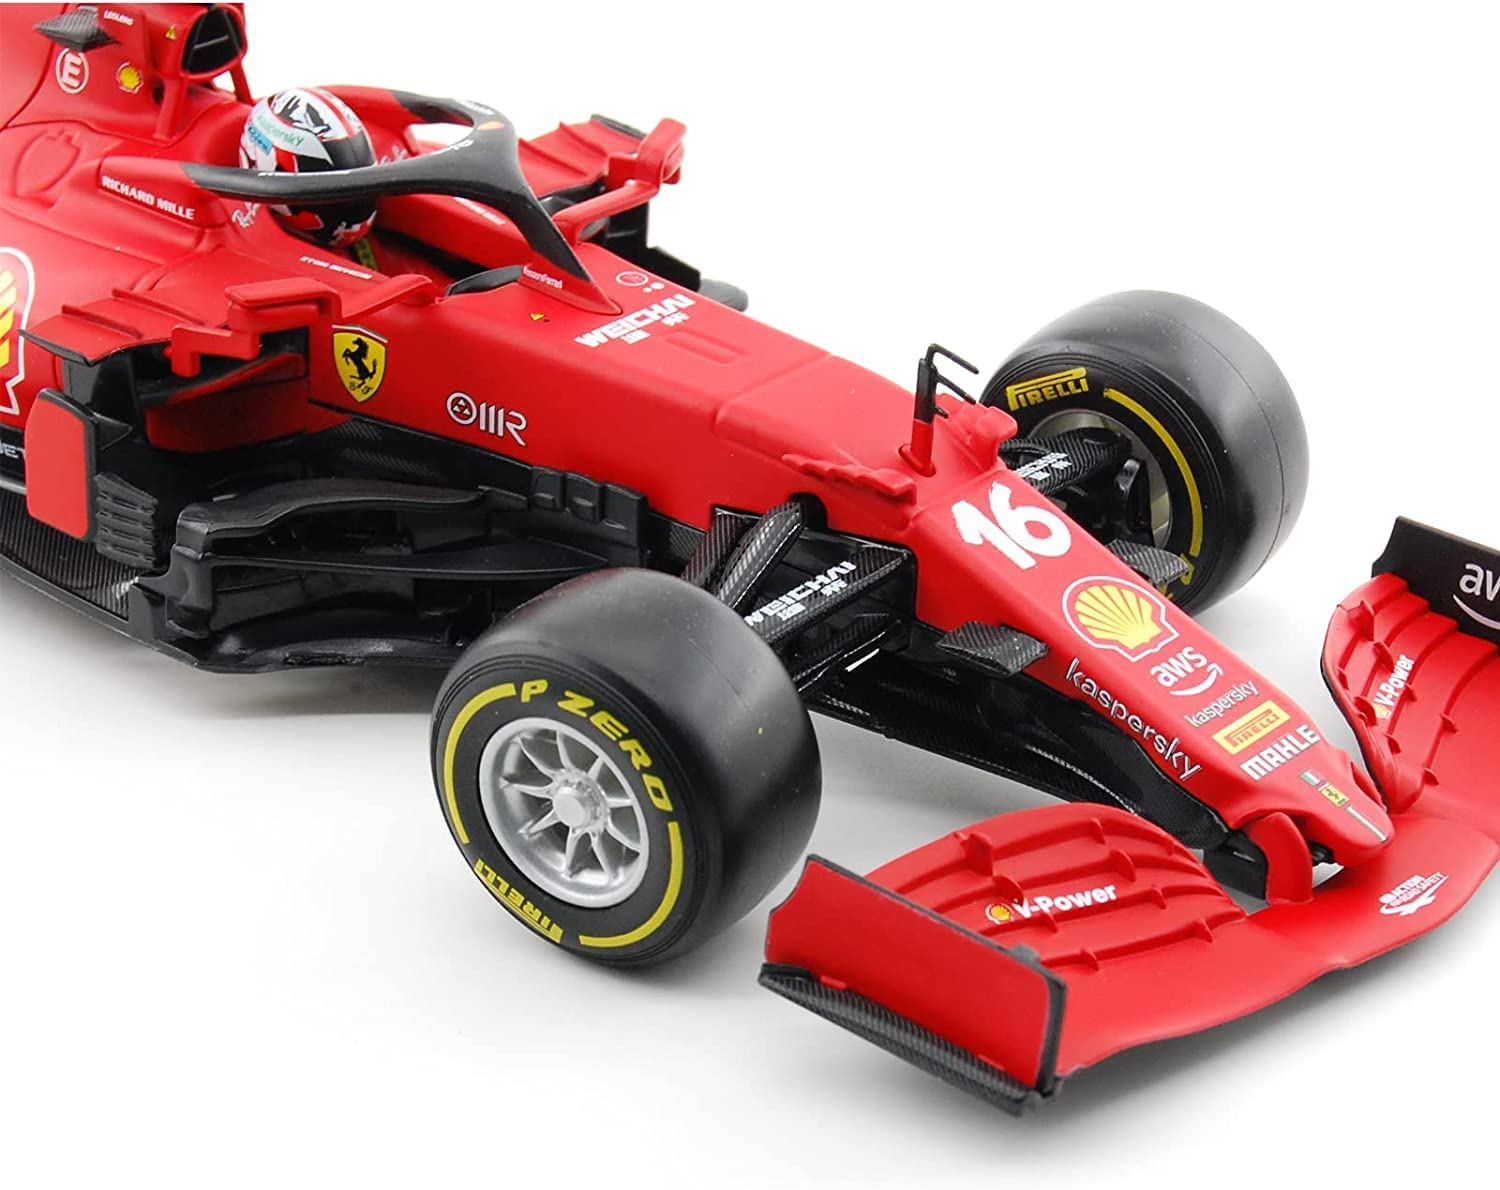 927775.024 bburago - Ferrari F1- 75 #55 Sainz 1:43